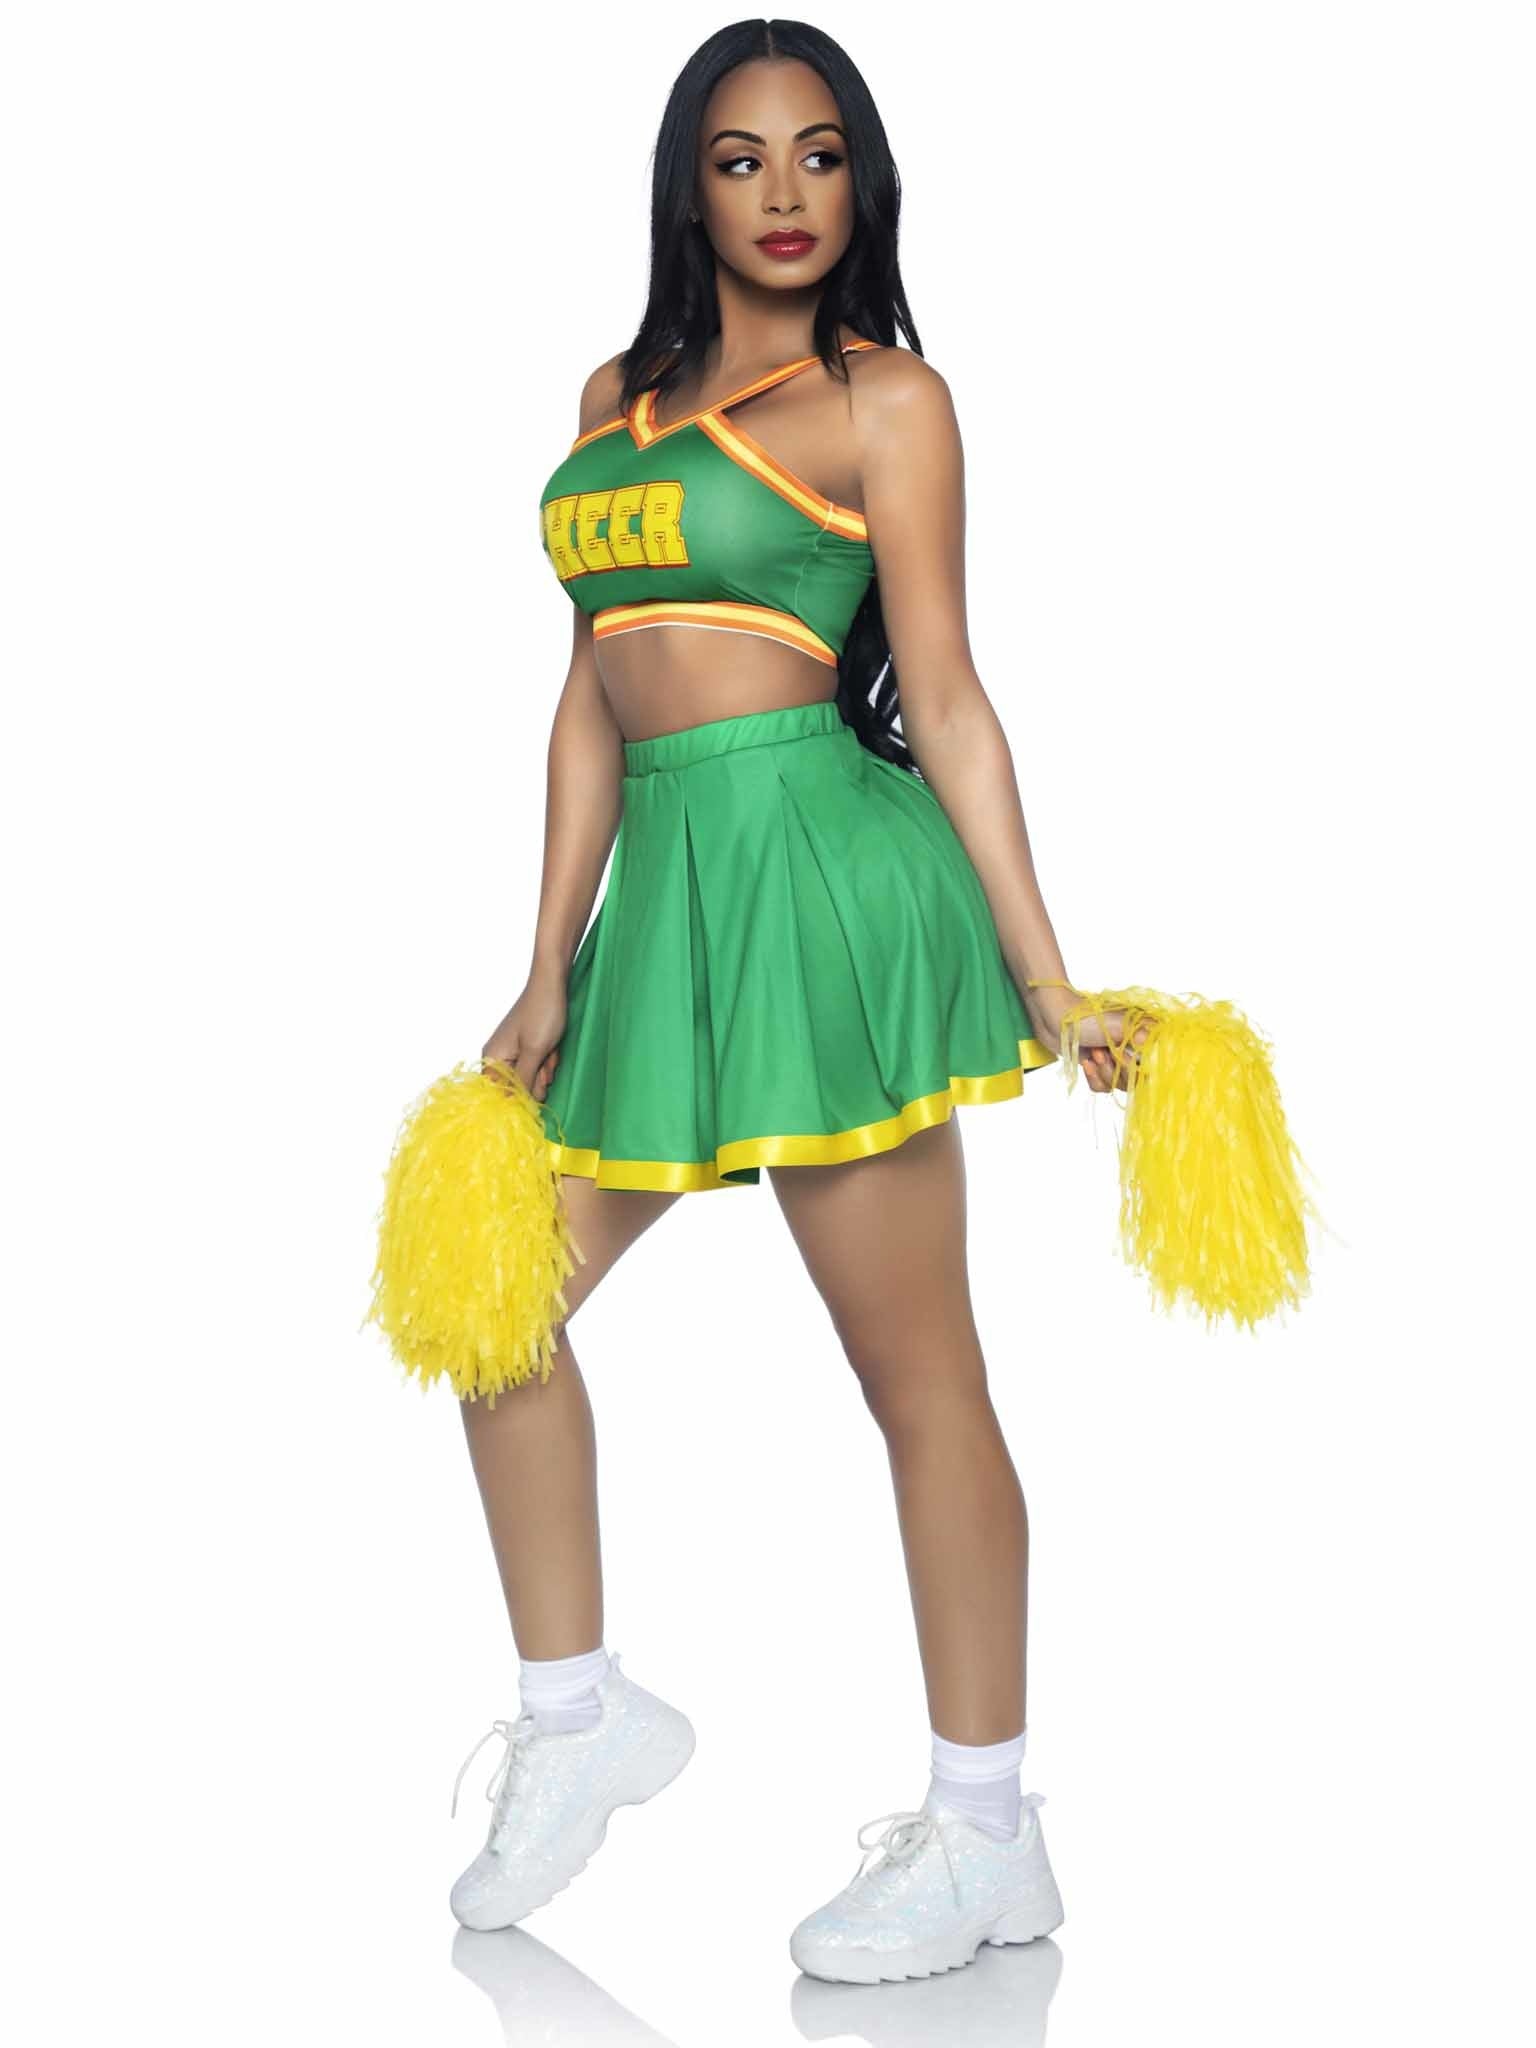 Costume Adulte - Cheerleader Vert - Party Shop